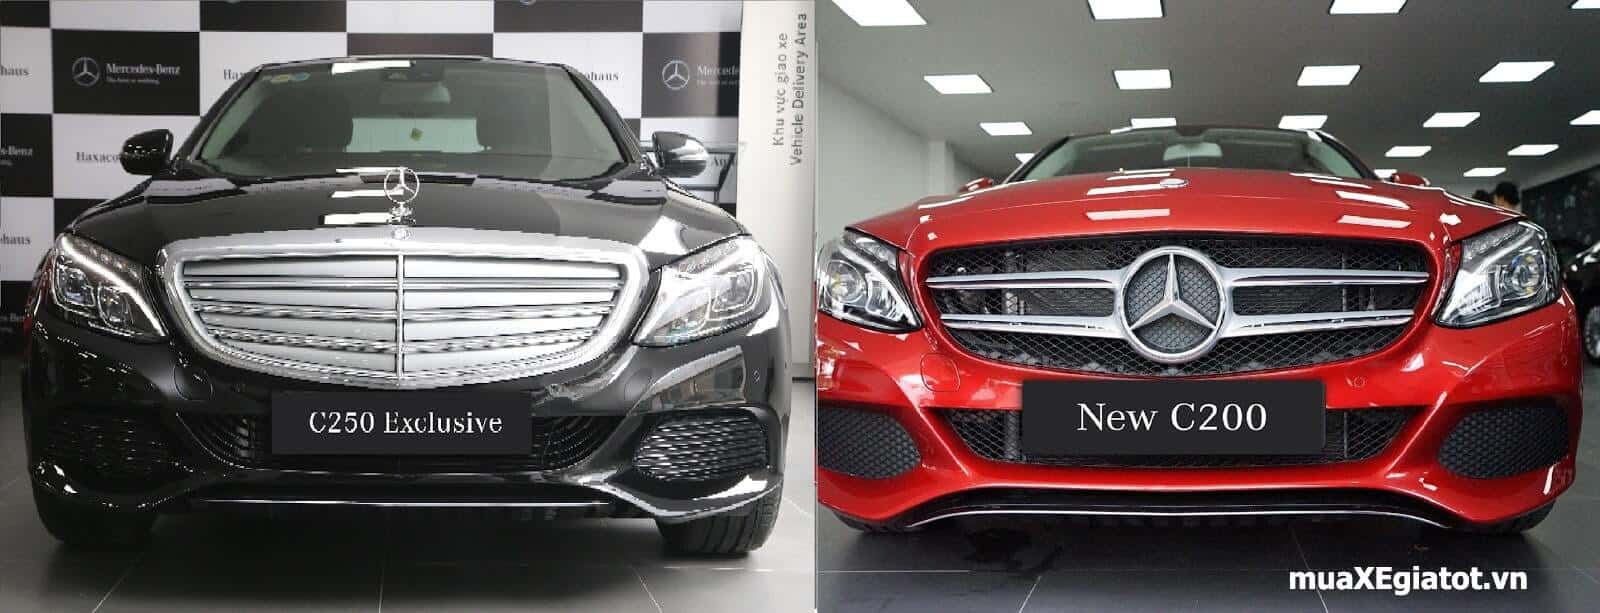 So sánh nhanh Mercedes C200 và C250 tại Việt Nam 